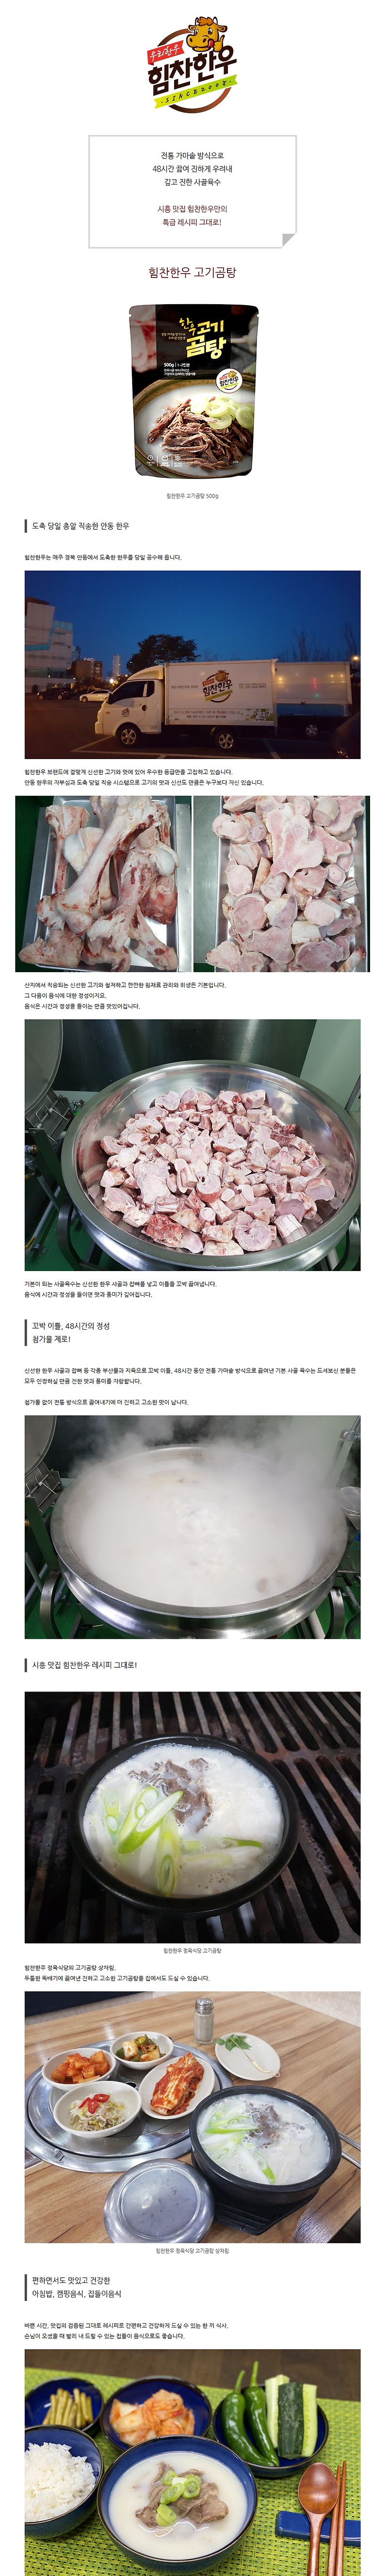 시흥 맛집 힘찬한우 고기곰탕 블로그 체험단 모집